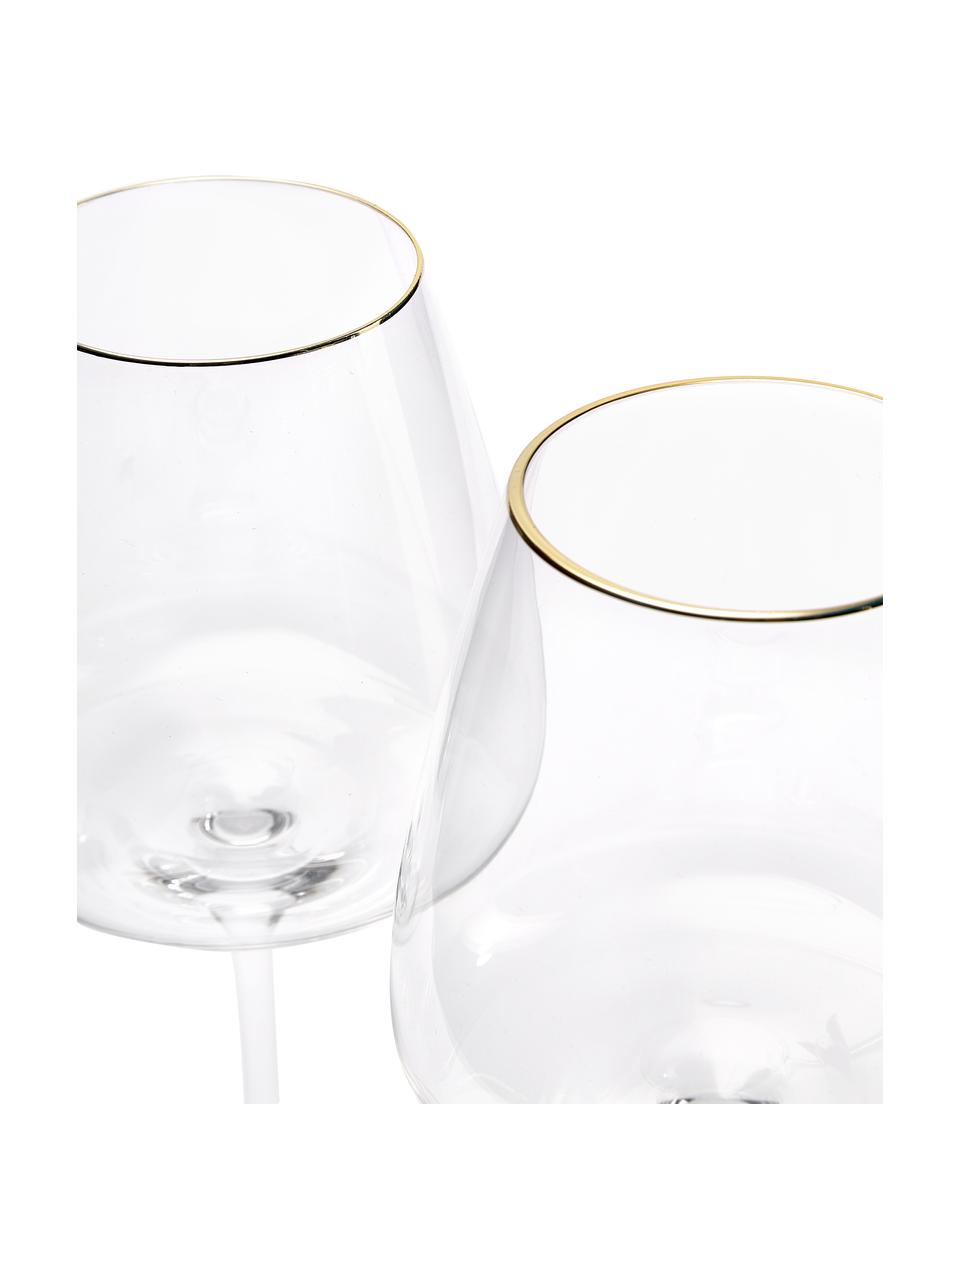 Copas de vino tinto de vidrio soplado artesanalmente Ellery, 4 uds., Vidrio, Transparente con borde dorado, Ø 11 x Al 23 cm